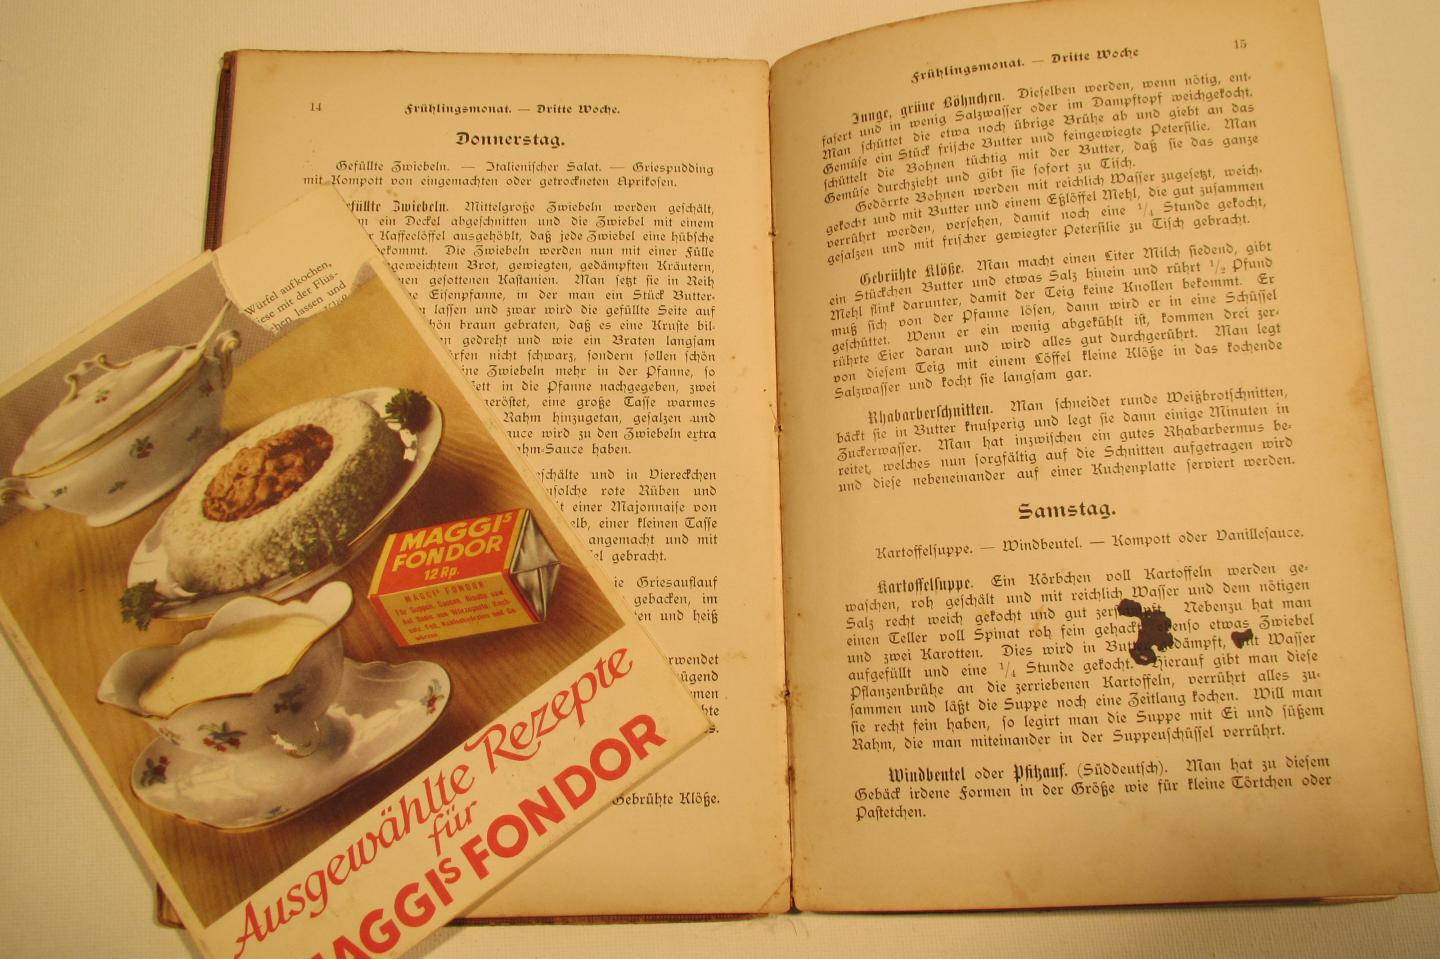 Martha Rammelmeyer - Vegetarische Kuche - boek uit 1907 ! - vegetarische keuken